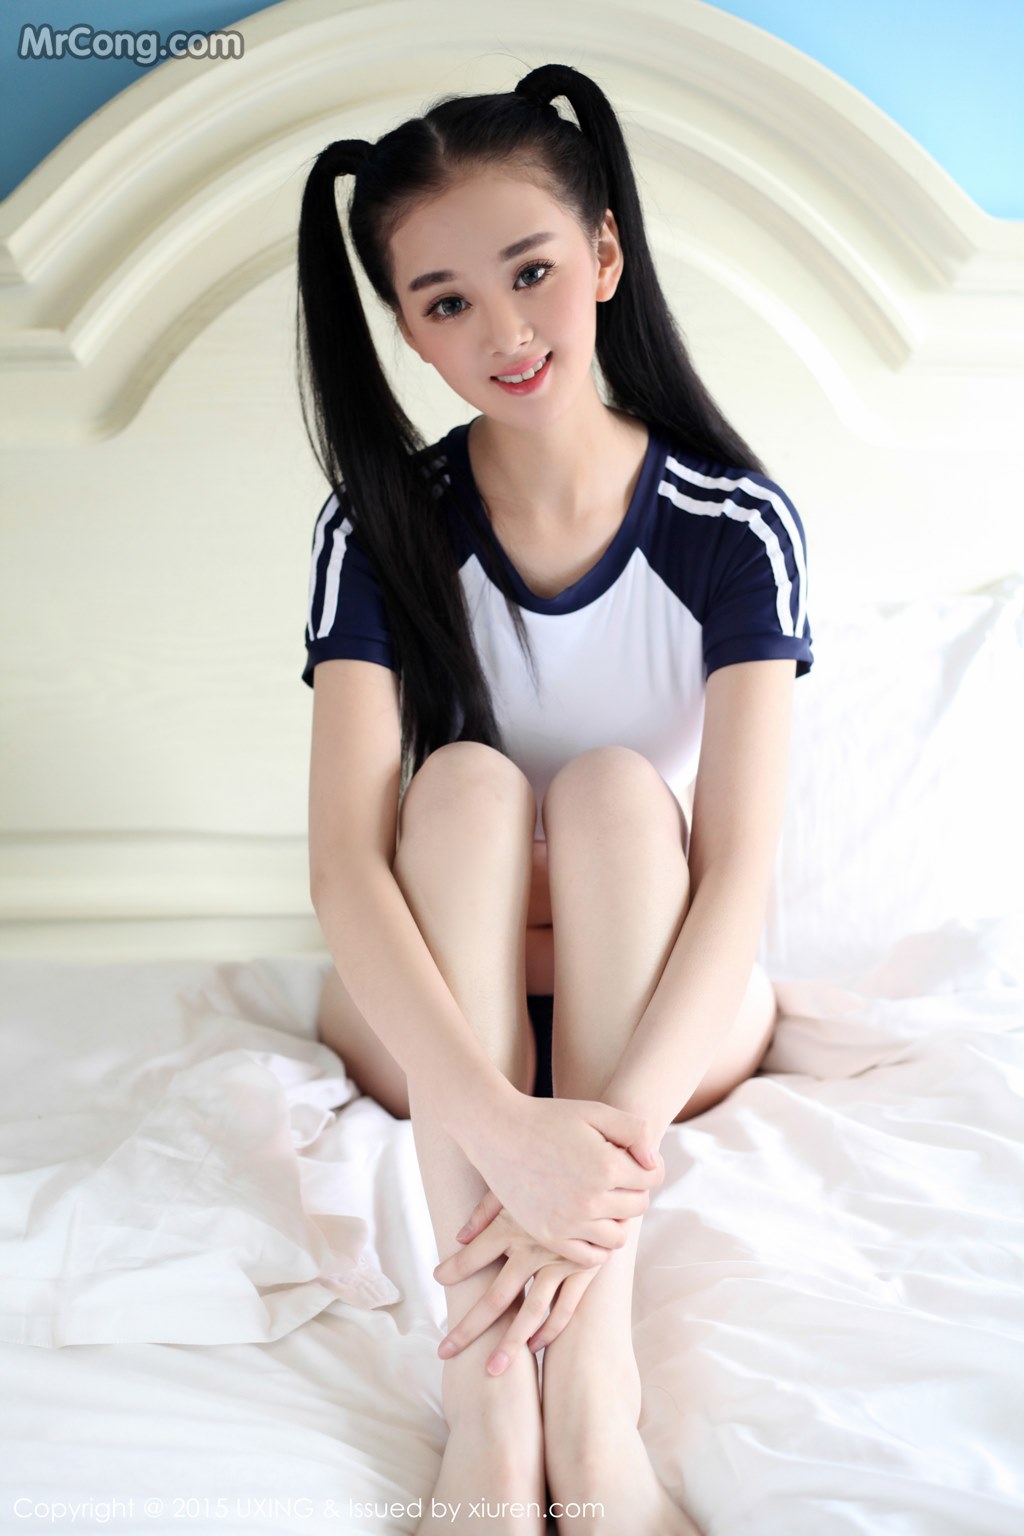 UXING Vol.027: Model Wen Xin Baby (温馨 baby) (45 pictures)